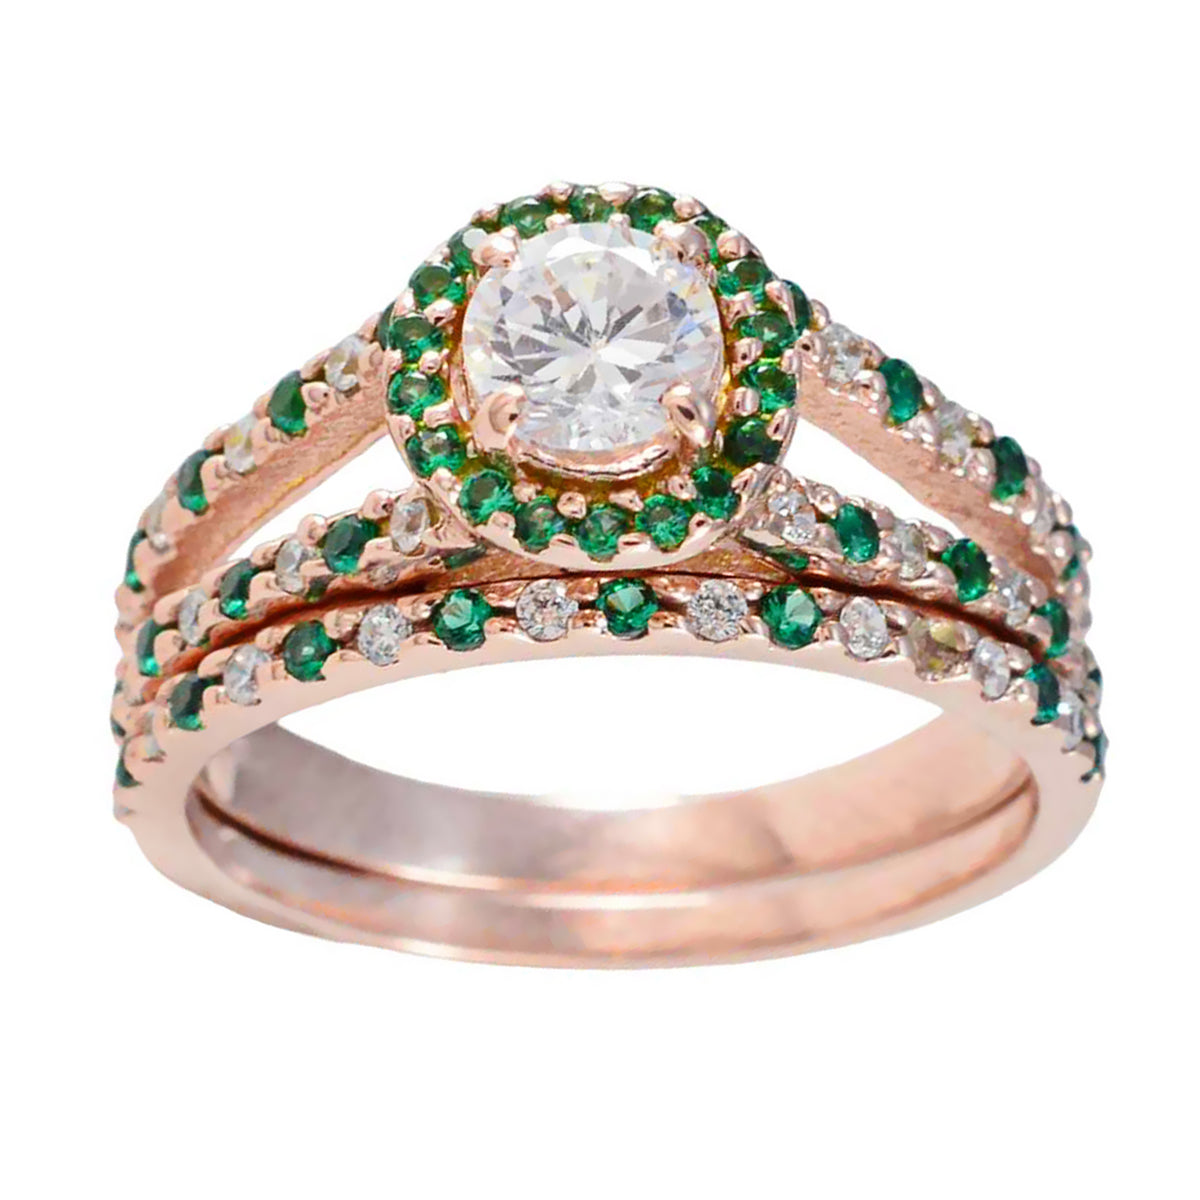 Riyo Umfangreicher Silberring mit Rosévergoldung, Smaragd-CZ-Stein, runde Form, Krappenfassung, Designer-Schmuck, Weihnachtsring